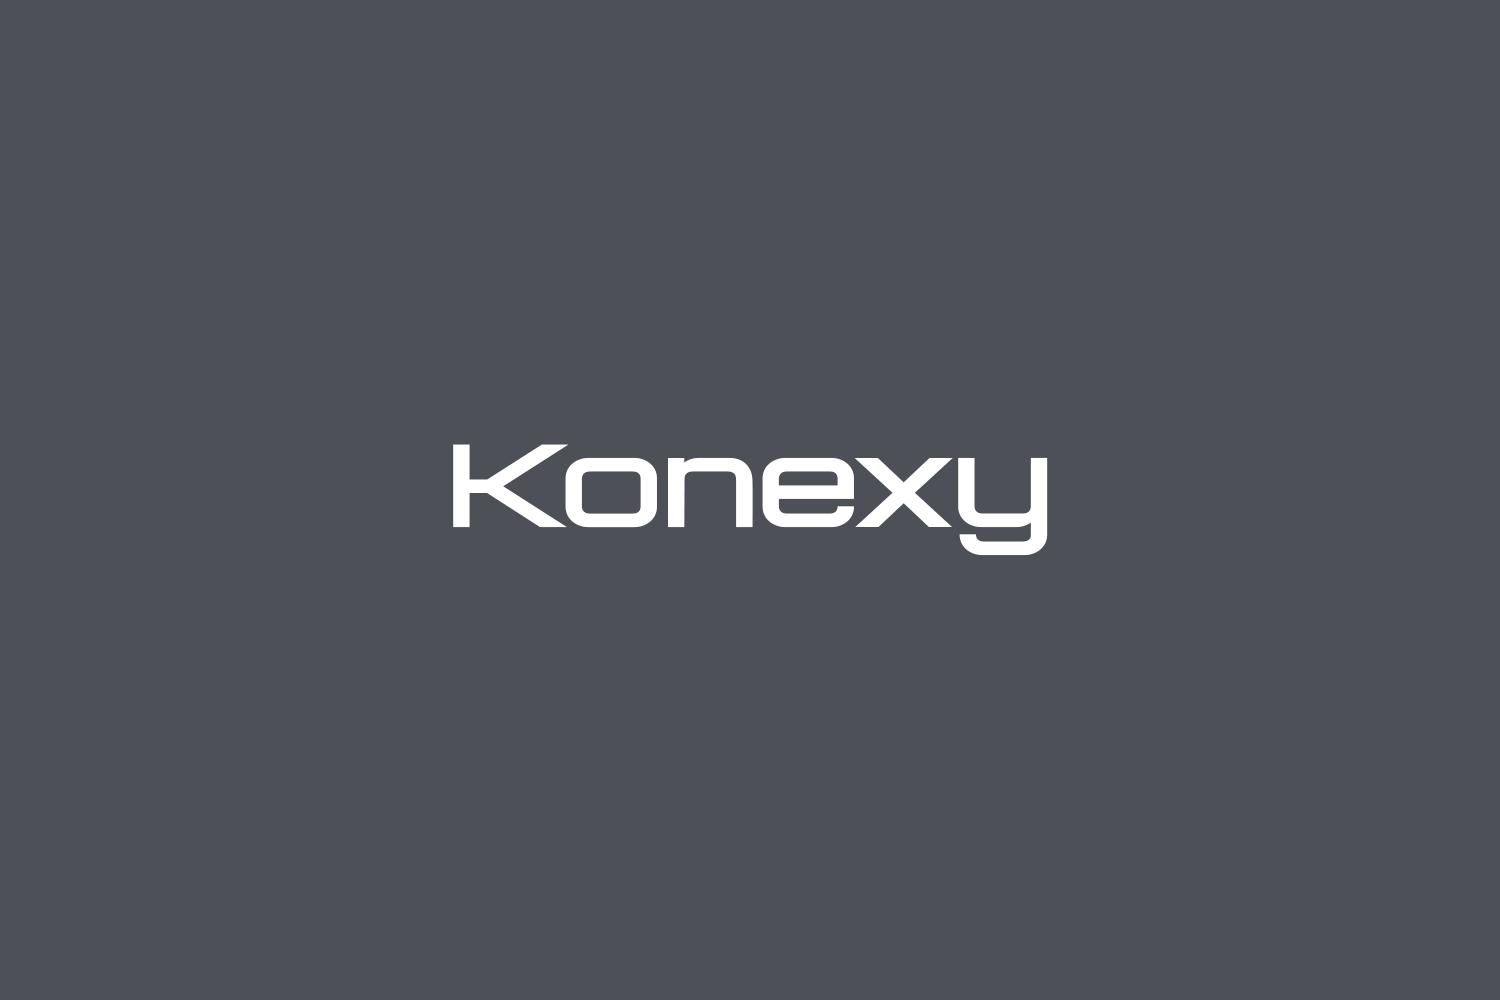 Konexy Free Font